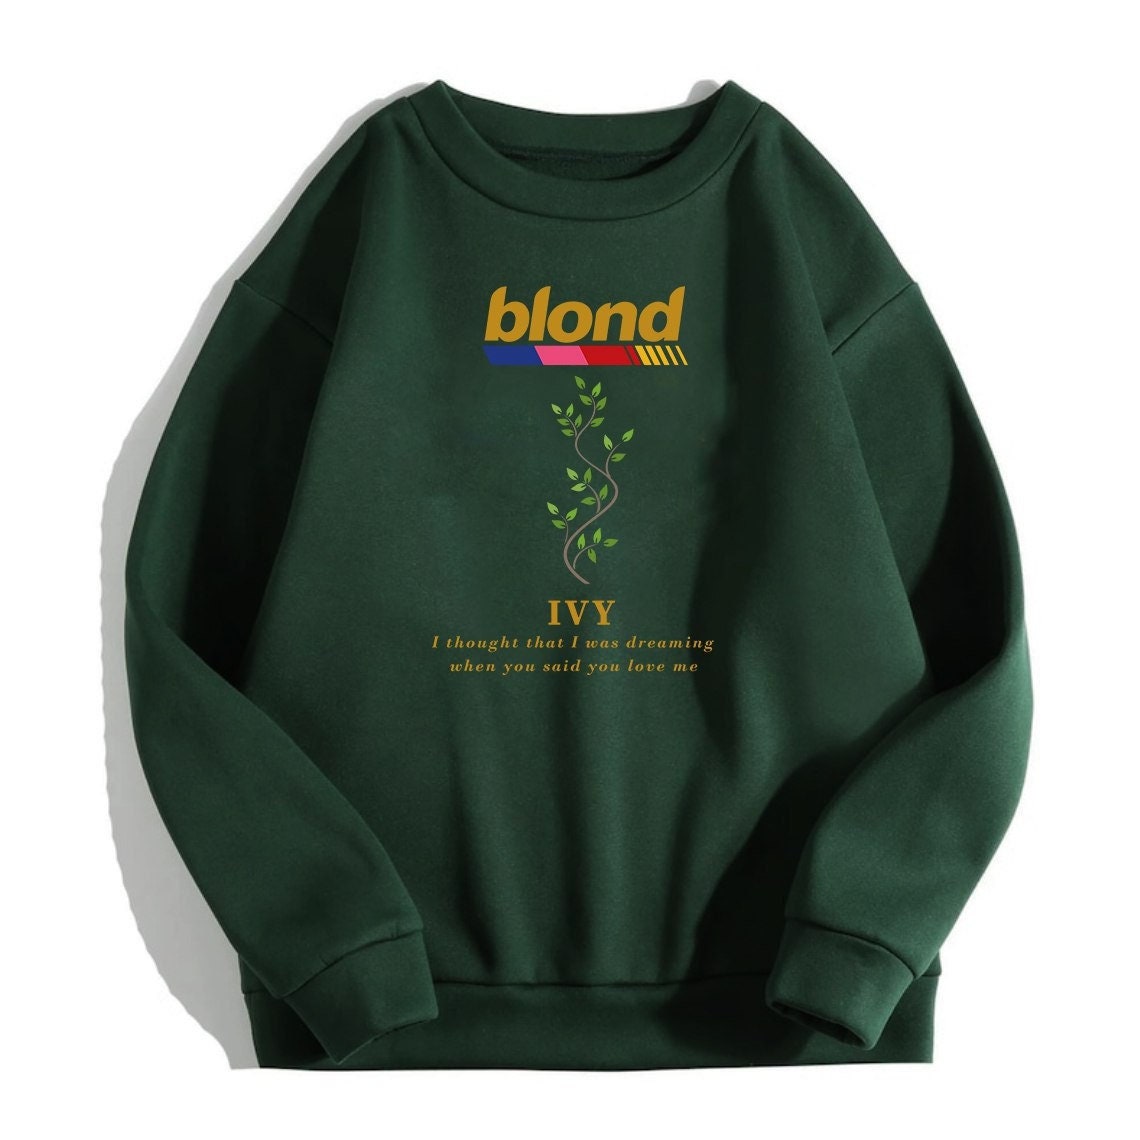 Discover Frank blond IVY Sweatshirt, For Fan blond Sweatshirt